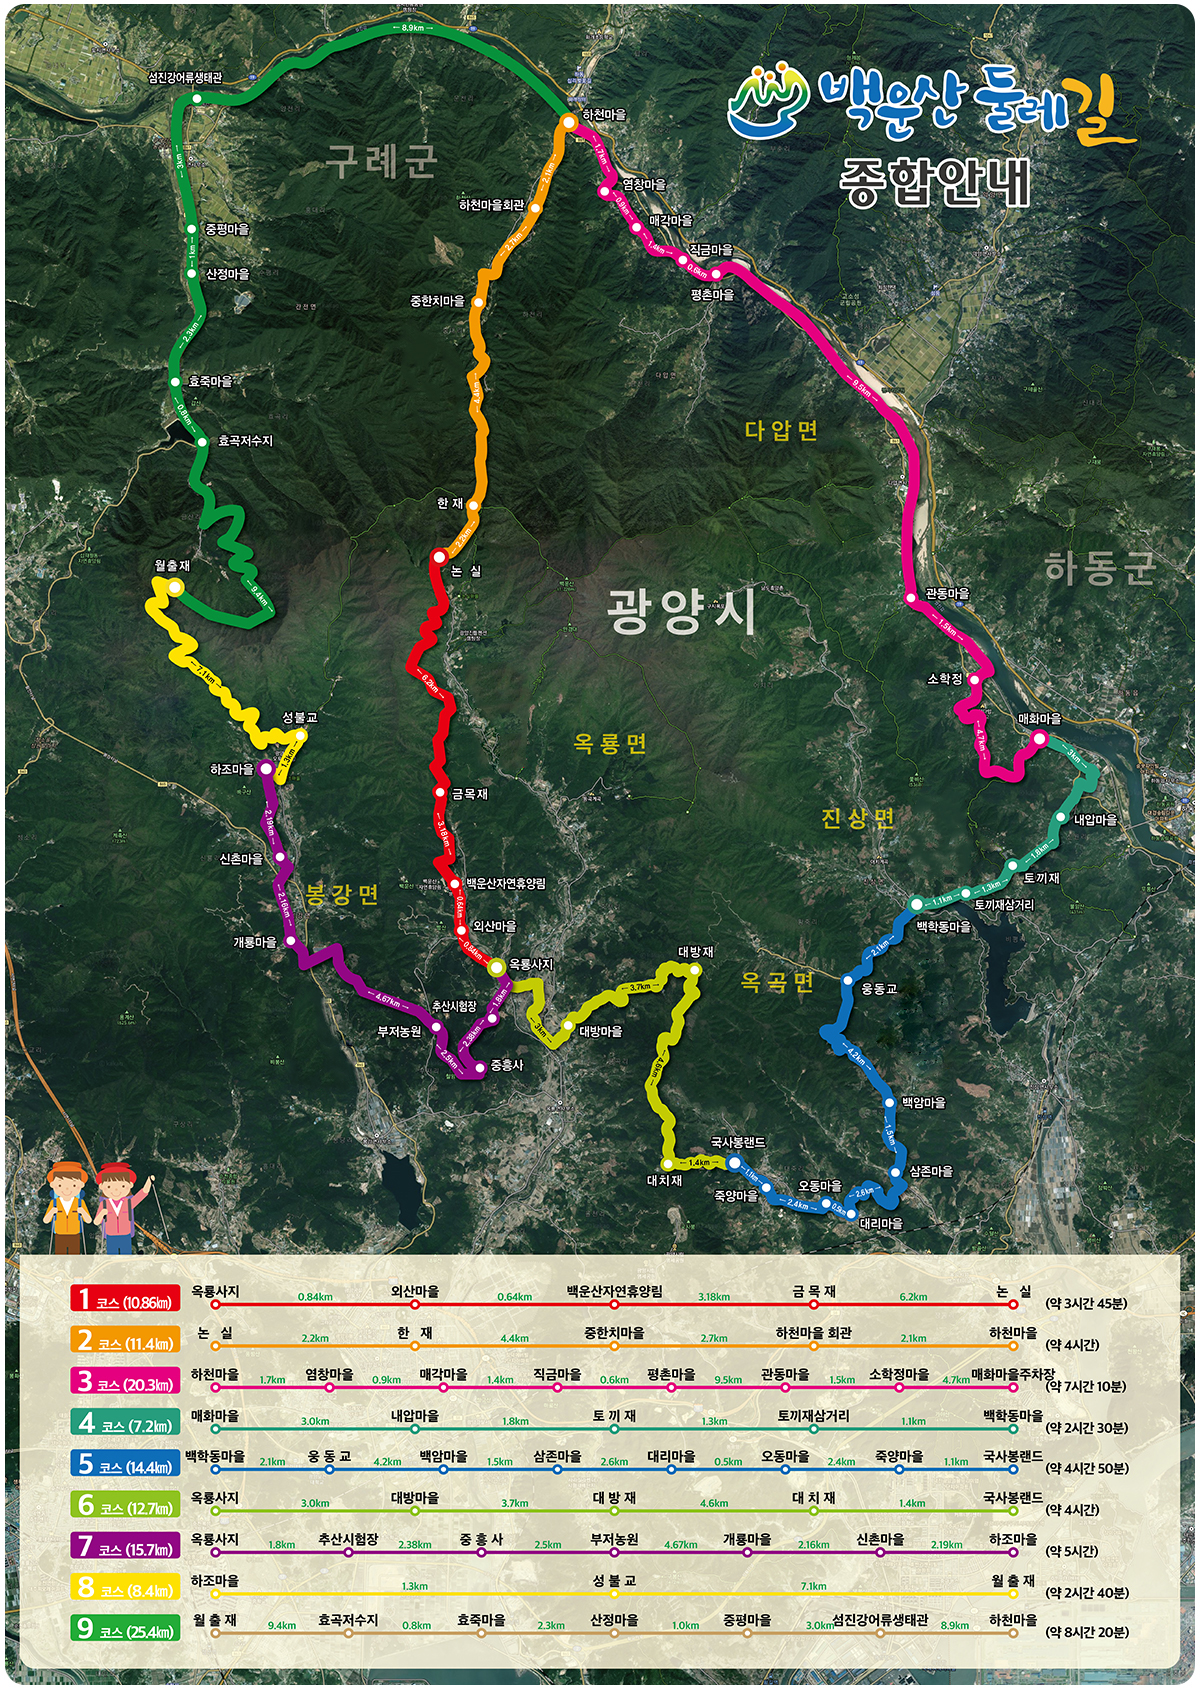 백운산둘레길 종합안내 1코스(10.86km) 옥룡사지-(0.84km)-외산마을-(0.64km)-백운산자연휴양림-(3.18km)-금목재-(6.2km)-논실(약 3시간 45분), 2코스(11.4km) 논실-(2.2km)-한재-(4.4km)-중한치마을-(2.7km)-하천마을회관-(2.1km)-하천마을 (약 4시간), 3코스(20.3km) 하천마을-(1.7km)-염창마을-(0.9km)-매각마을-(1.4km)-직금마을-(0.6km)-평촌마을-(9.5km)-관동마을-(1.5km)-소학정마을-(4.7km)-매화마을주차장 (약 7시간 10분), 4코스(7.2km) 매화마을-(3.0km)-내압마을-(1.8km)-토끼재-(1.3km)-토끼재삼거리-(1.1km)-백학동마을 (약 2시간 30분), 5코스(14.4km) 백학동마을-(2.1km)-웅동교-(4.2km)-백암마을-(1.5km)-삼존마을-(2.6km)-대리마을-(0.5km)-오동마을-(2.4km)-죽양마을-(1.1km)-국사봉랜드(약 4시간 50분), 6코스(12.7km) 옥룡사지-(1.8km)-대방마을-(3.7km)-대방재-(4.6km)-대치재-(1.4km)-국사봉랜드(약 4시간), 7코스(15.7km) 옥룡사지-(1.8km)-추산시험장-(2.38km)-중흥사-(2.5km)-부저농원-(4.67km)-개룡마을-(2.16km)-신촌마을-(2.19km)-하조마을(약 5시간), 8코스(8.4km) 하조마을-(1.3km)-성불교-(7.1km)-월출재(약 2시간 40분), 9코스(25.4km) 월출재-(9.4km)-효곡저수지-(0.8km)-효죽마을-(2.3km)-산정마을-(1.0km)-중평마을-(3.0km)-섬진강어류생태관-(8.9km)-하천마을 (약 8시간 20분)